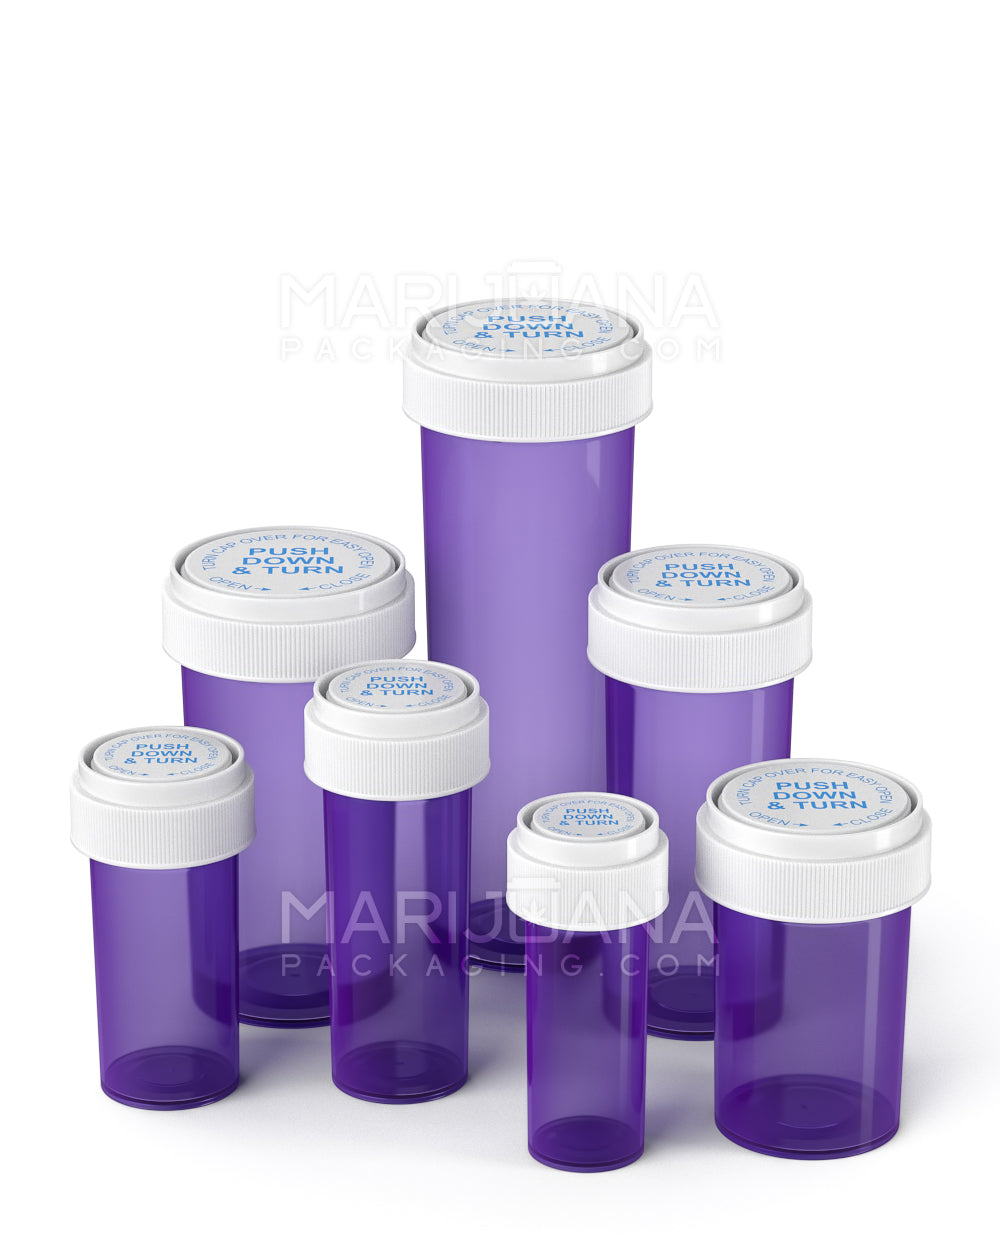 Child Resistant | Purple Reversible Cap Vials | 20dr - 3.5g - 240 Count - 10